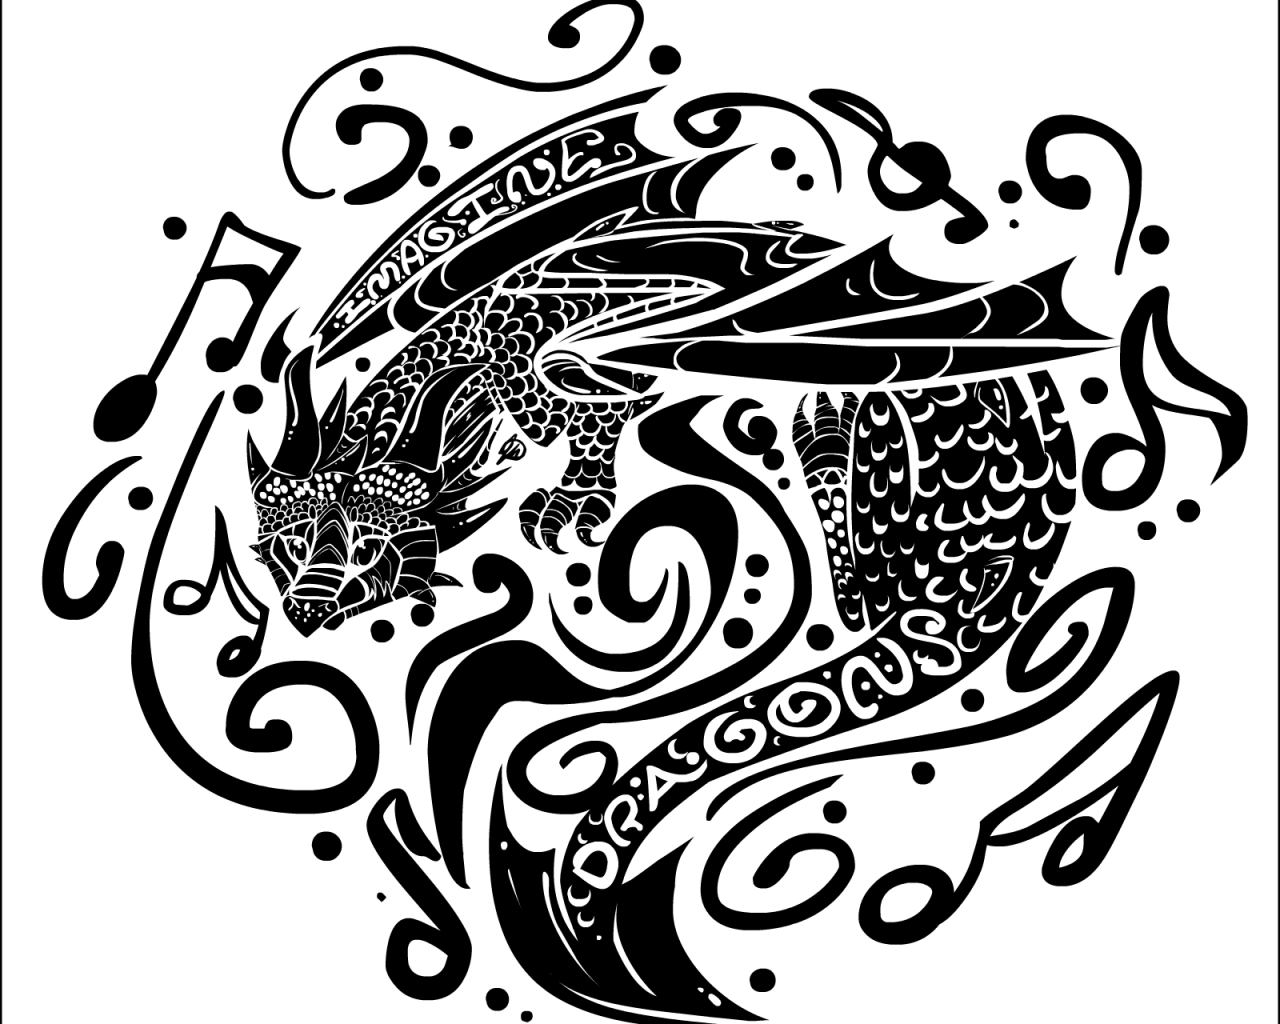 Imagine Dragons: татуировка знак группы